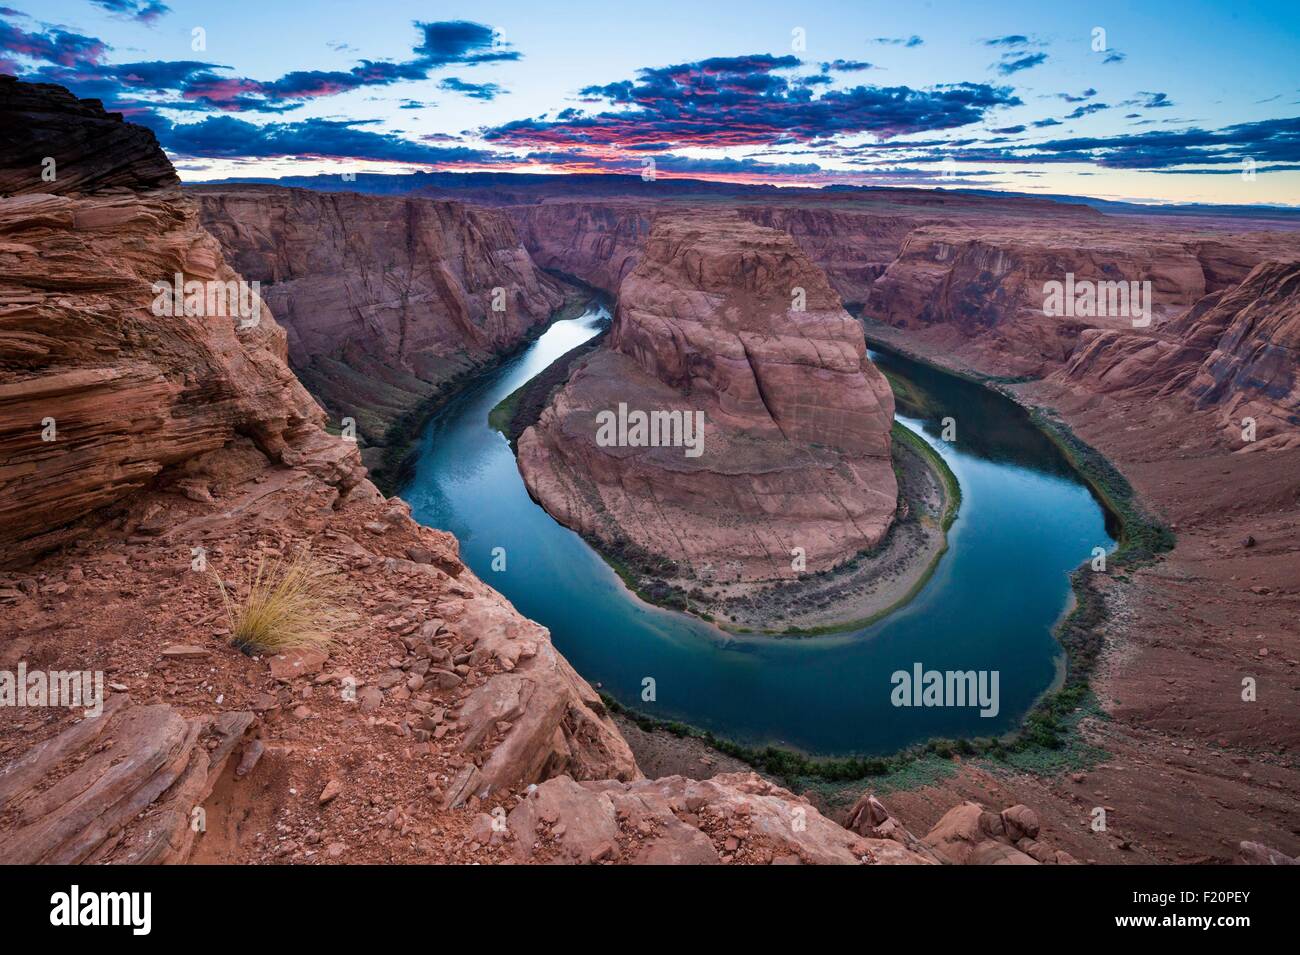 United States, Arizona, Page, Glen Canyon National Recreation Area, Horseshoe Bend et la rivière Colorado Banque D'Images